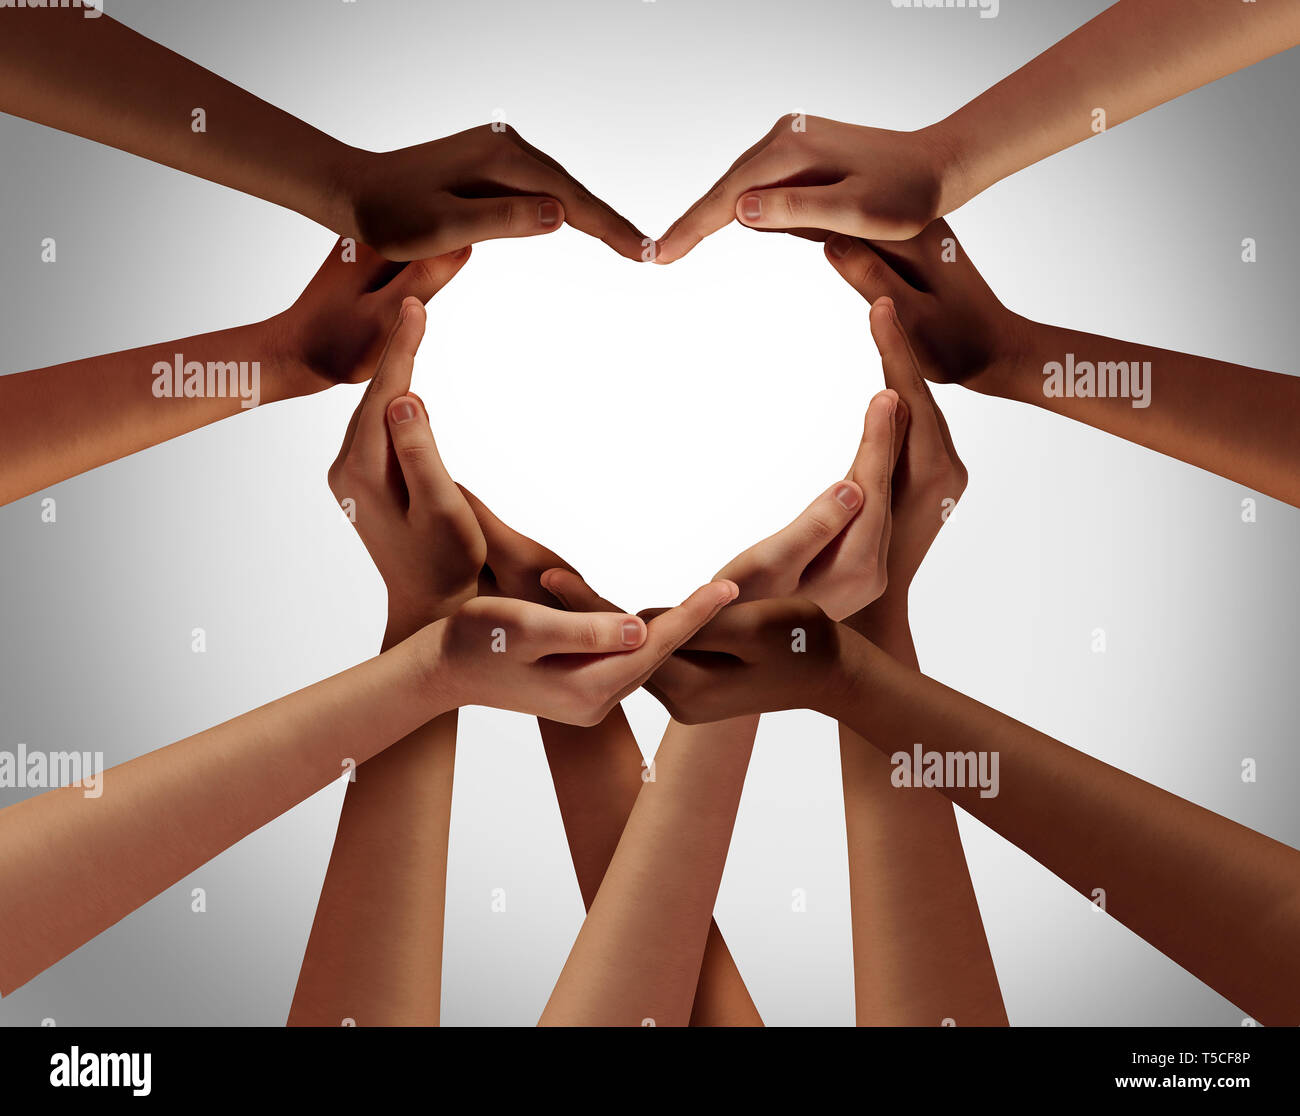 Herz Hände, als eine Gruppe von unterschiedlichsten Menschen die Hände miteinander verbunden als Symbol der Liebe, das Gefühl, glücklich zu sein und das Miteinander geprägt. Stockfoto